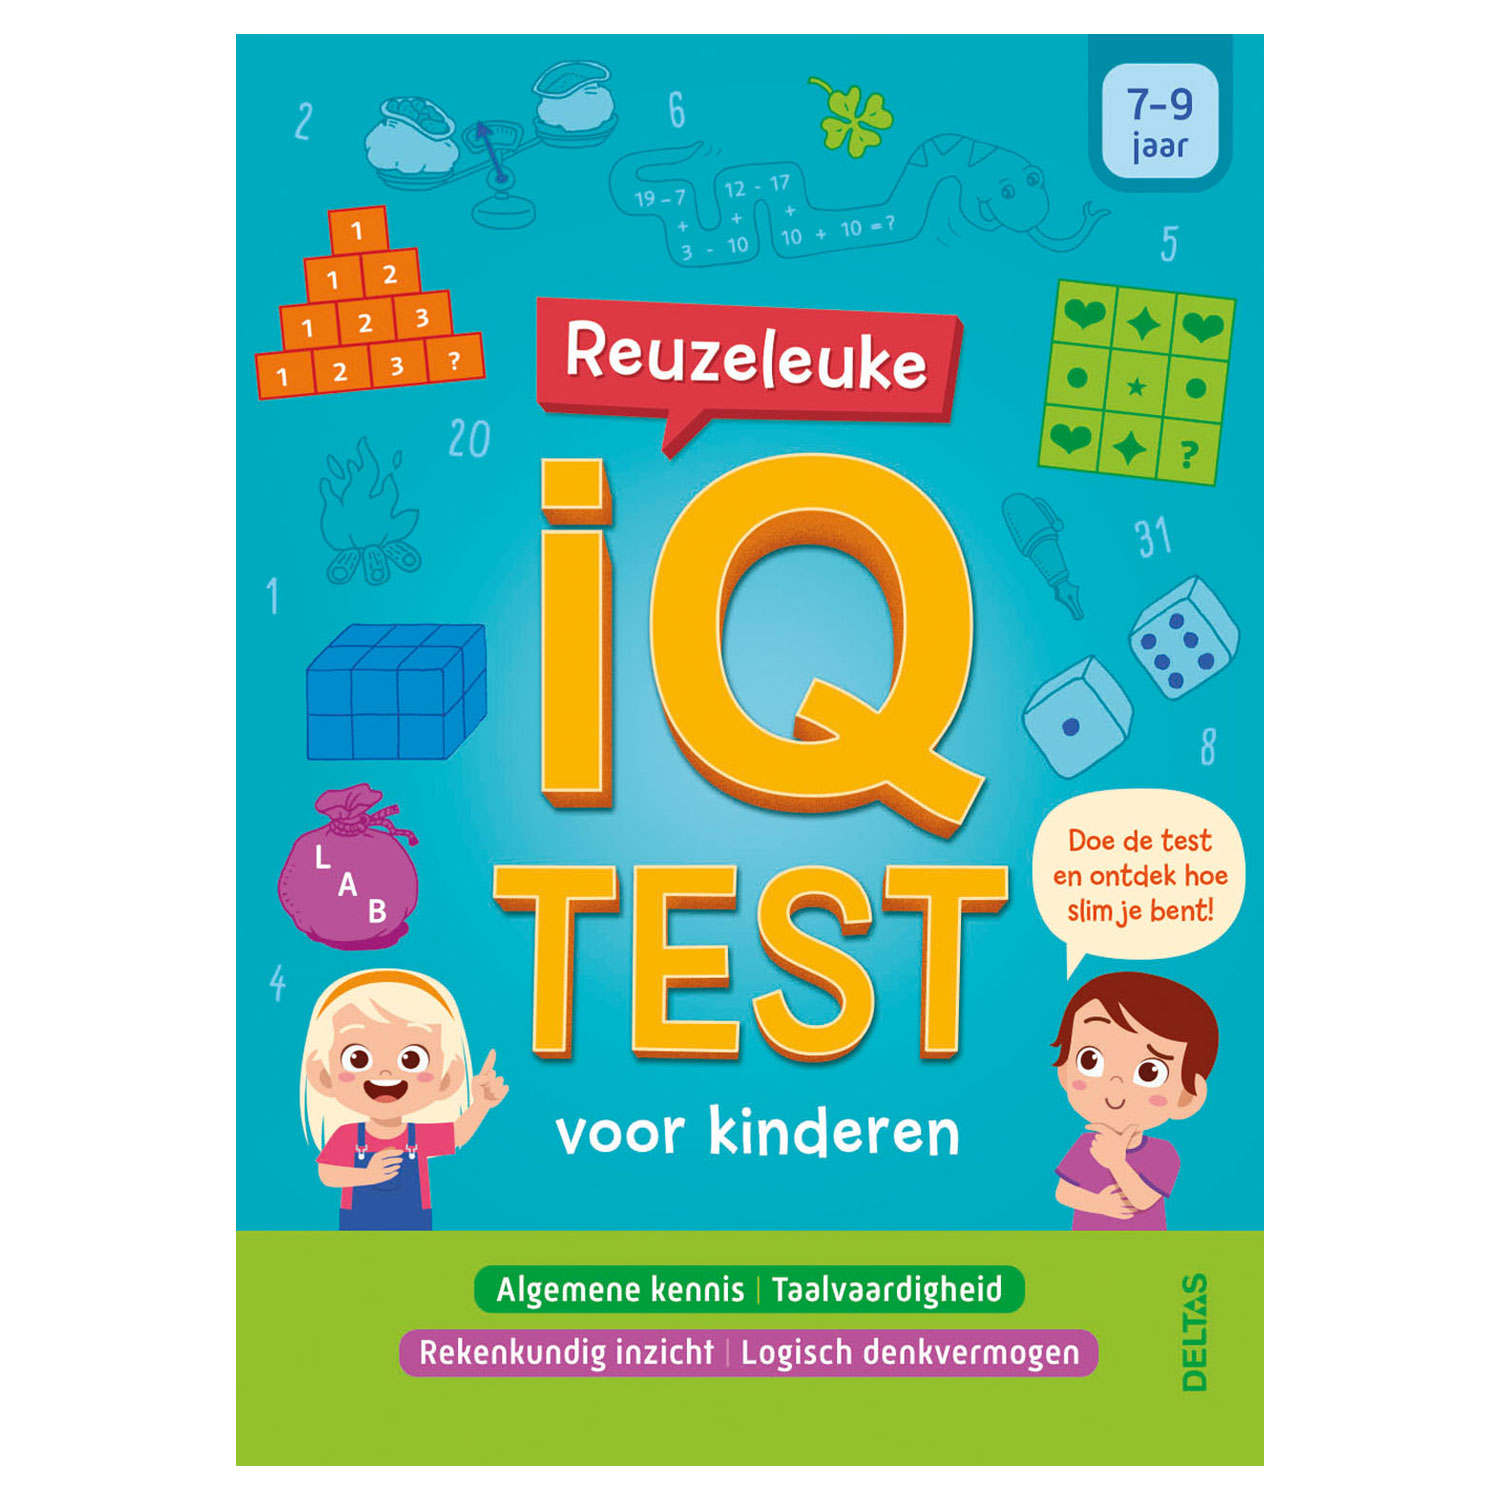 industrie Notebook Zich verzetten tegen Reuzeleuke IQ test voor kinderen (7-9 jaar) online ... | Lobbes Speelgoed